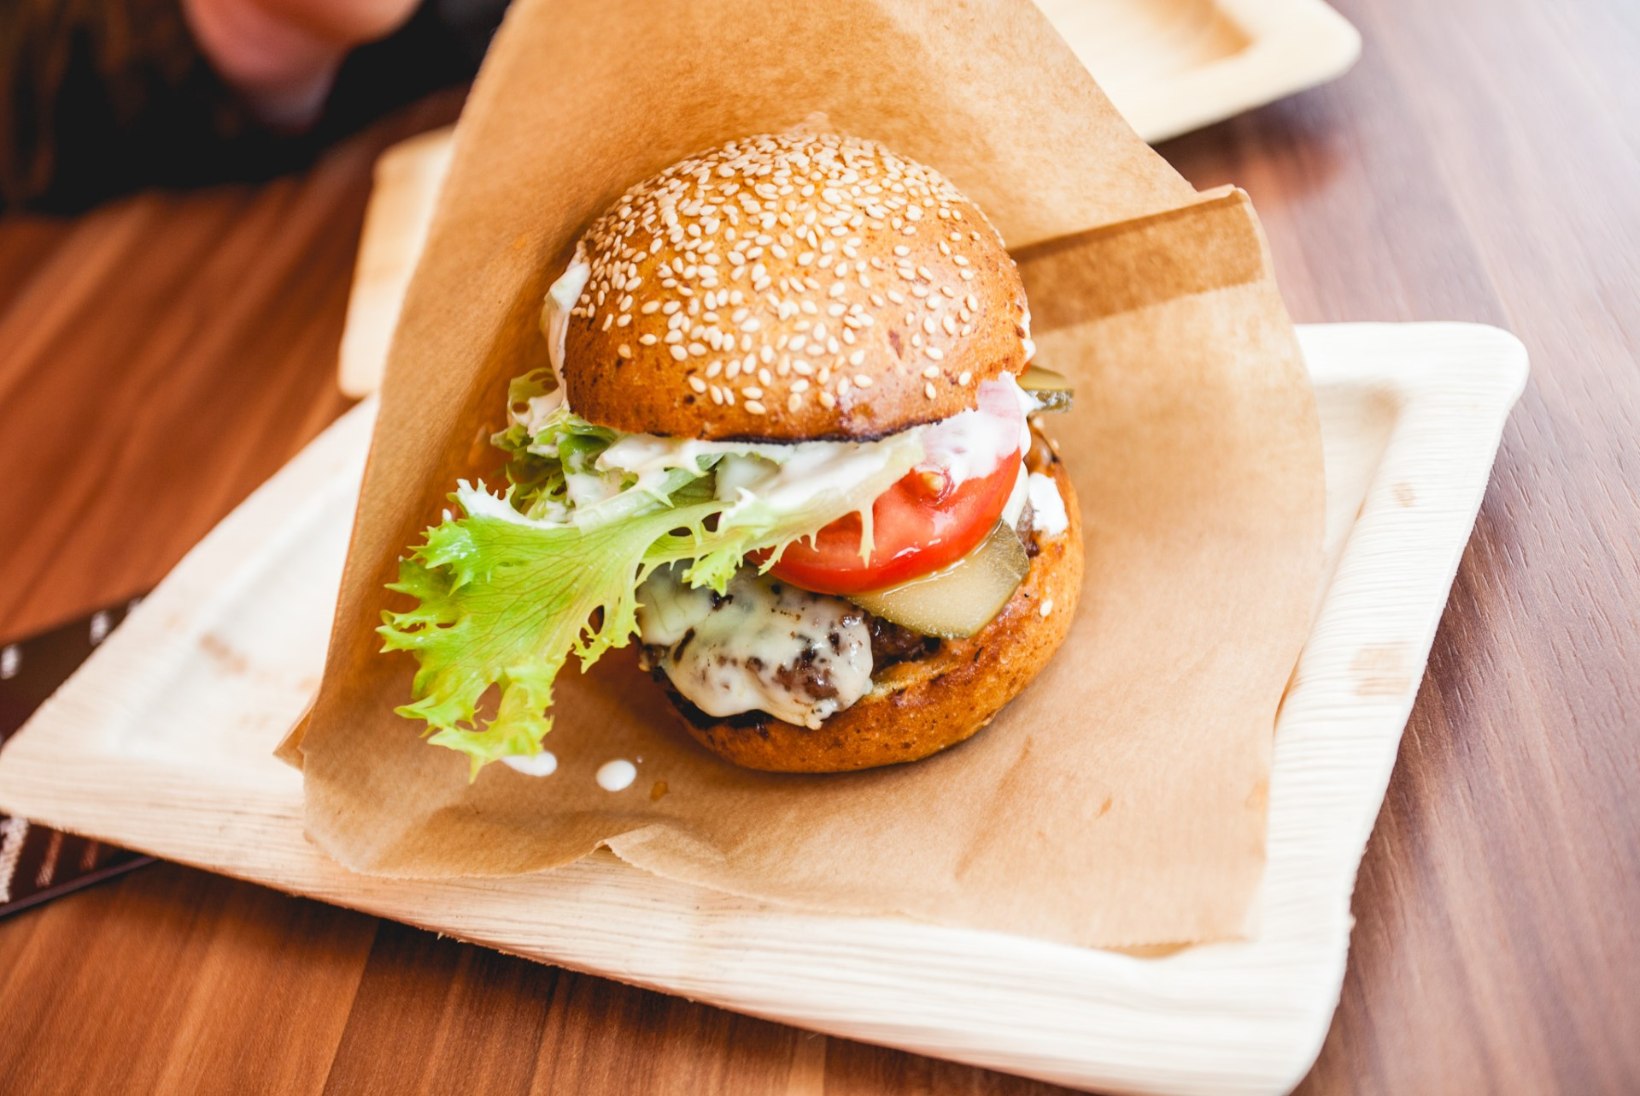 Kas tervislik burger on võimalik? Mida kostab selle kohta toitumisnõustaja Erik Orgu?